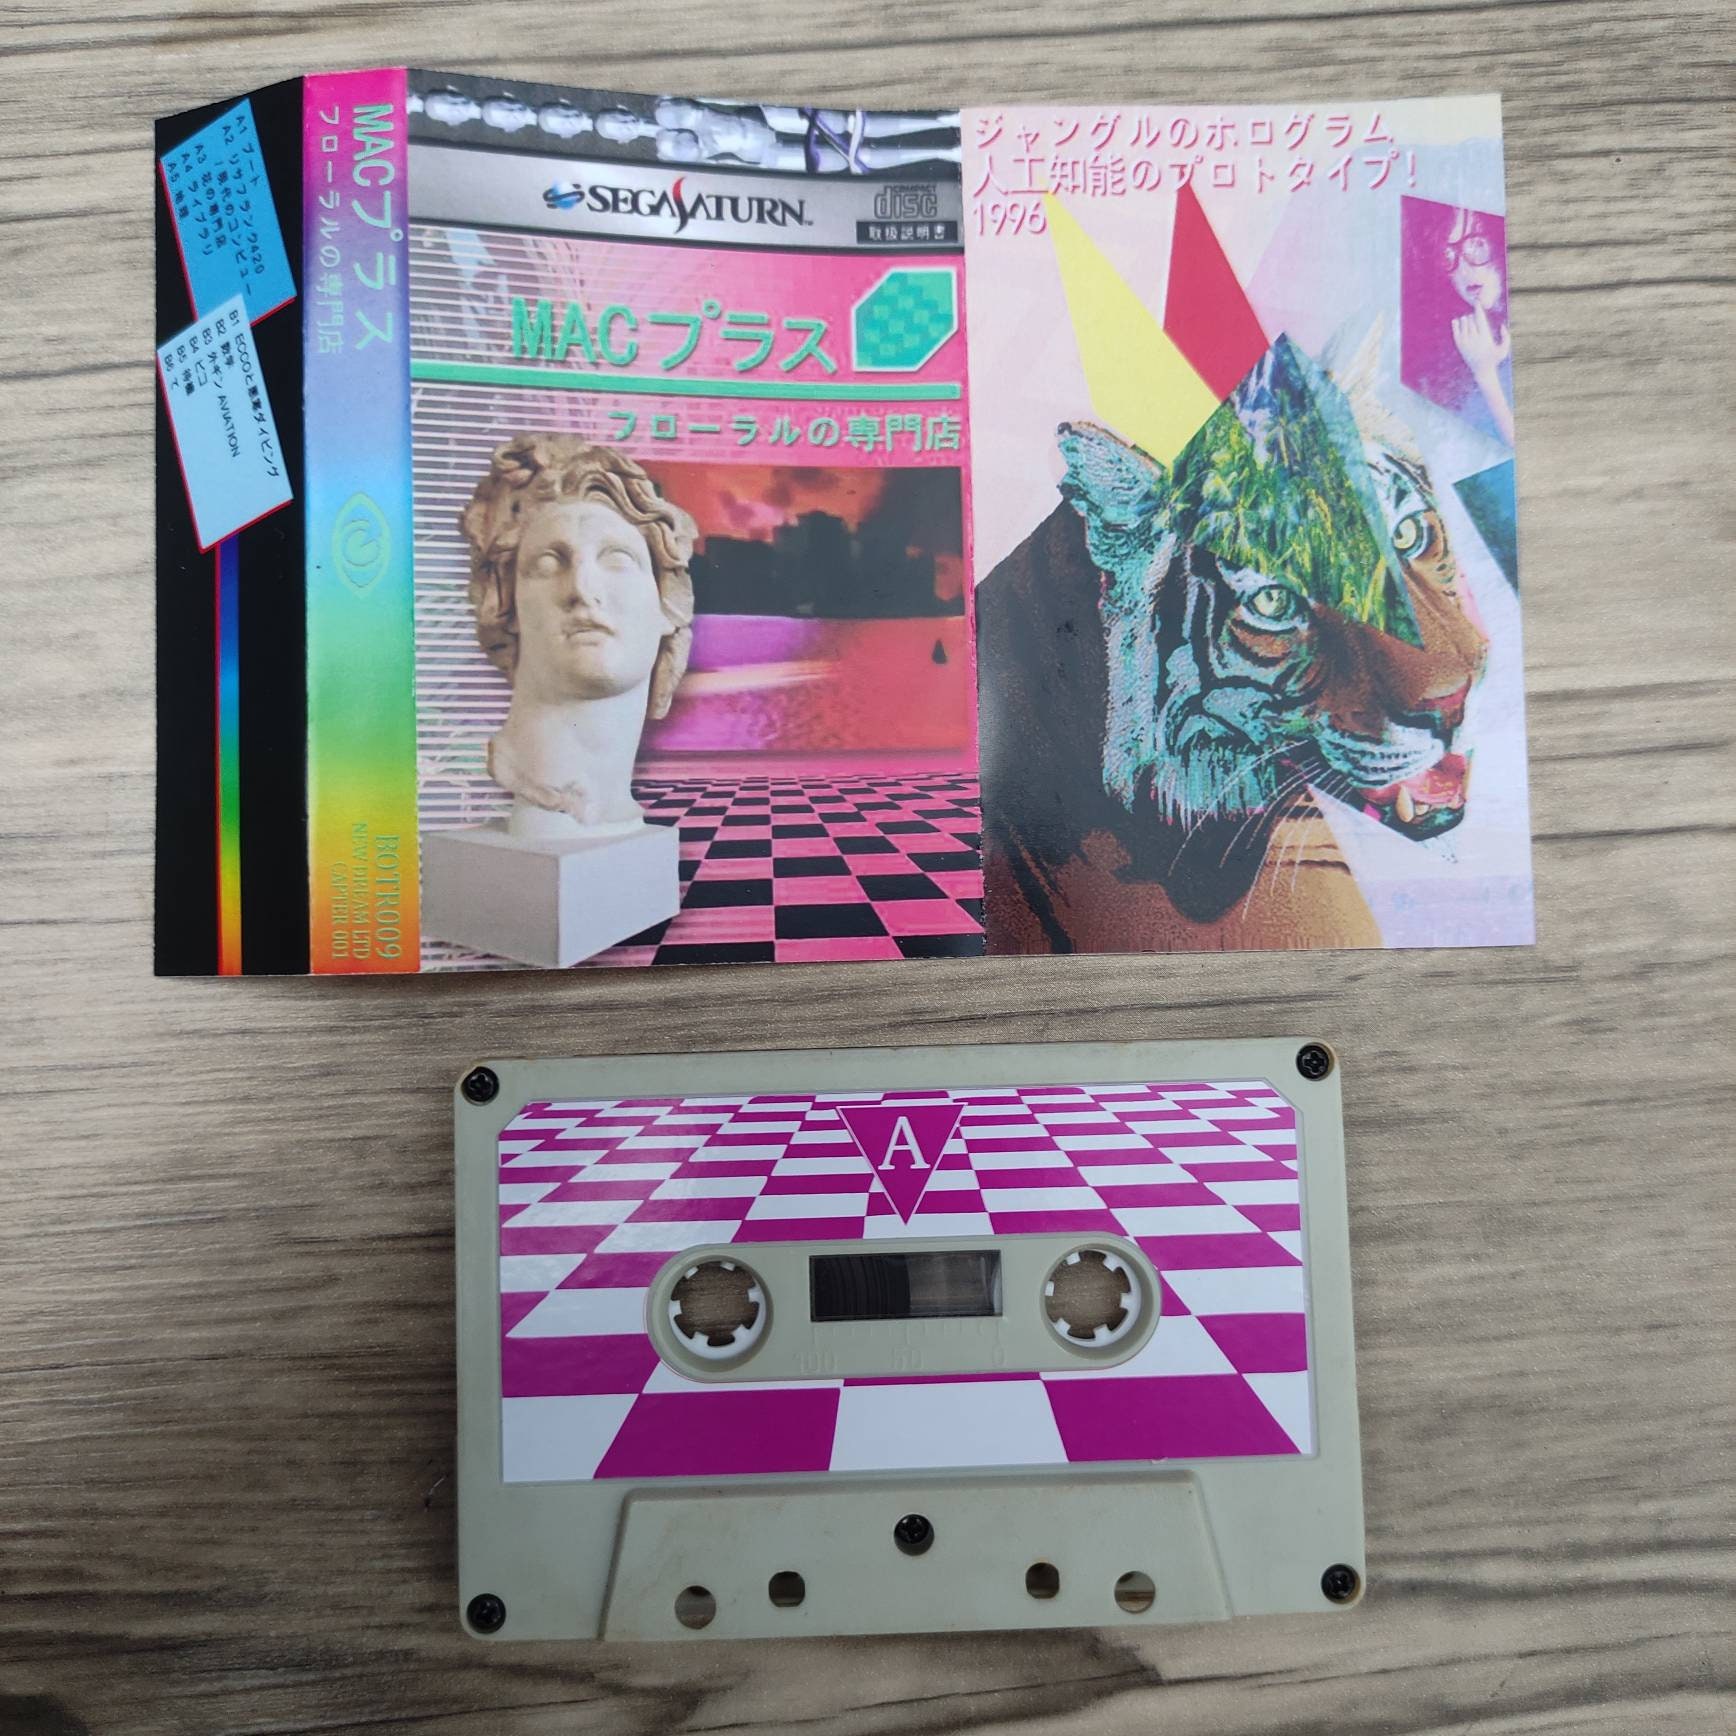 Macintosh Plus Floral Shoppe audio Cassette citypop japan Etsy 日本